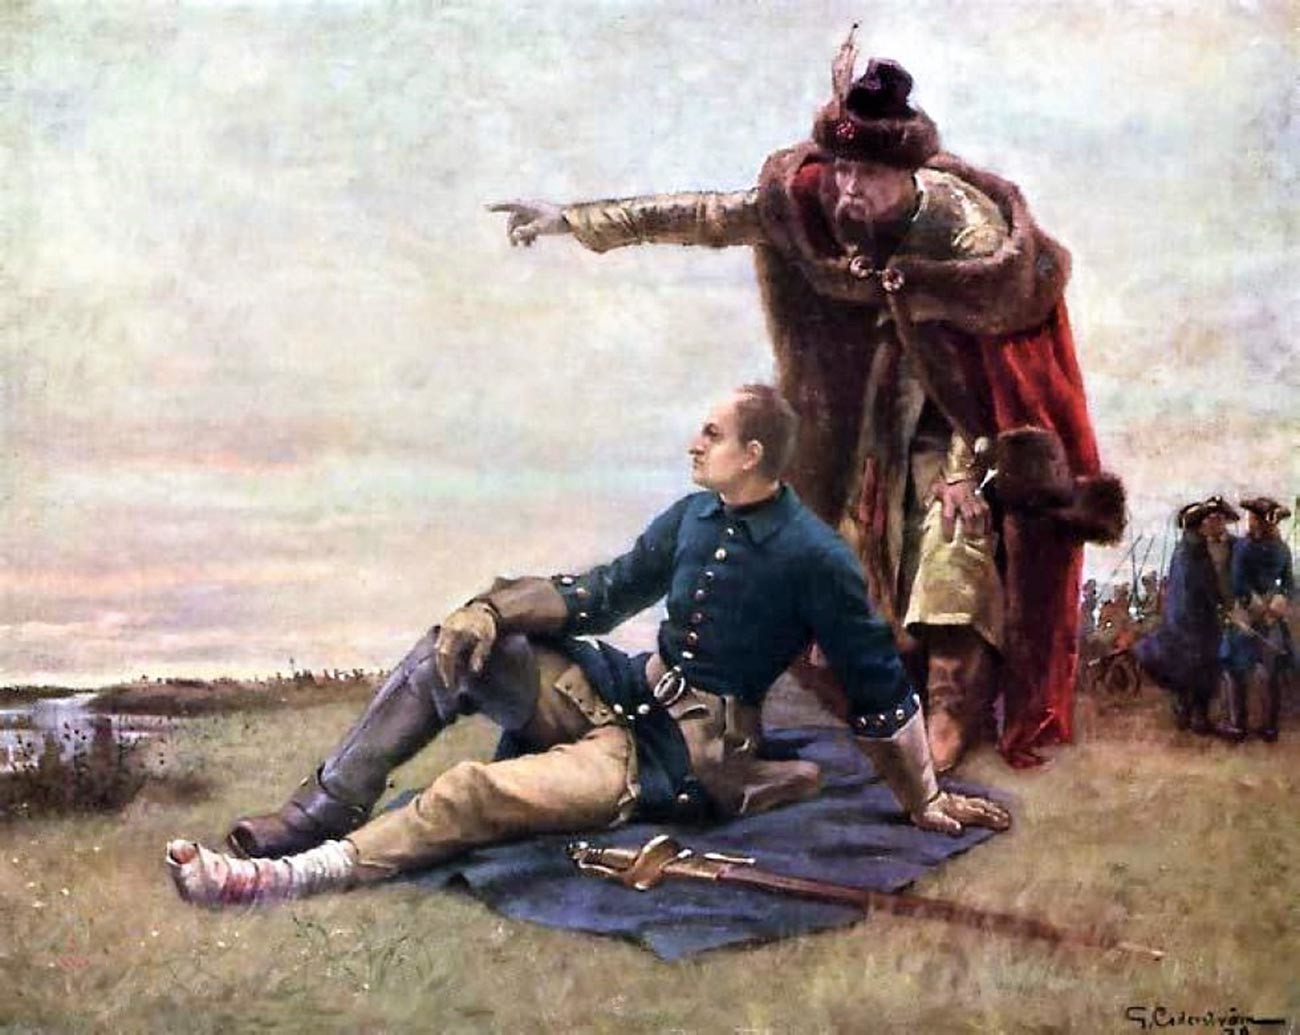 Carlos XII e Ivan Maziépa depois da Batalha de Poltava.

